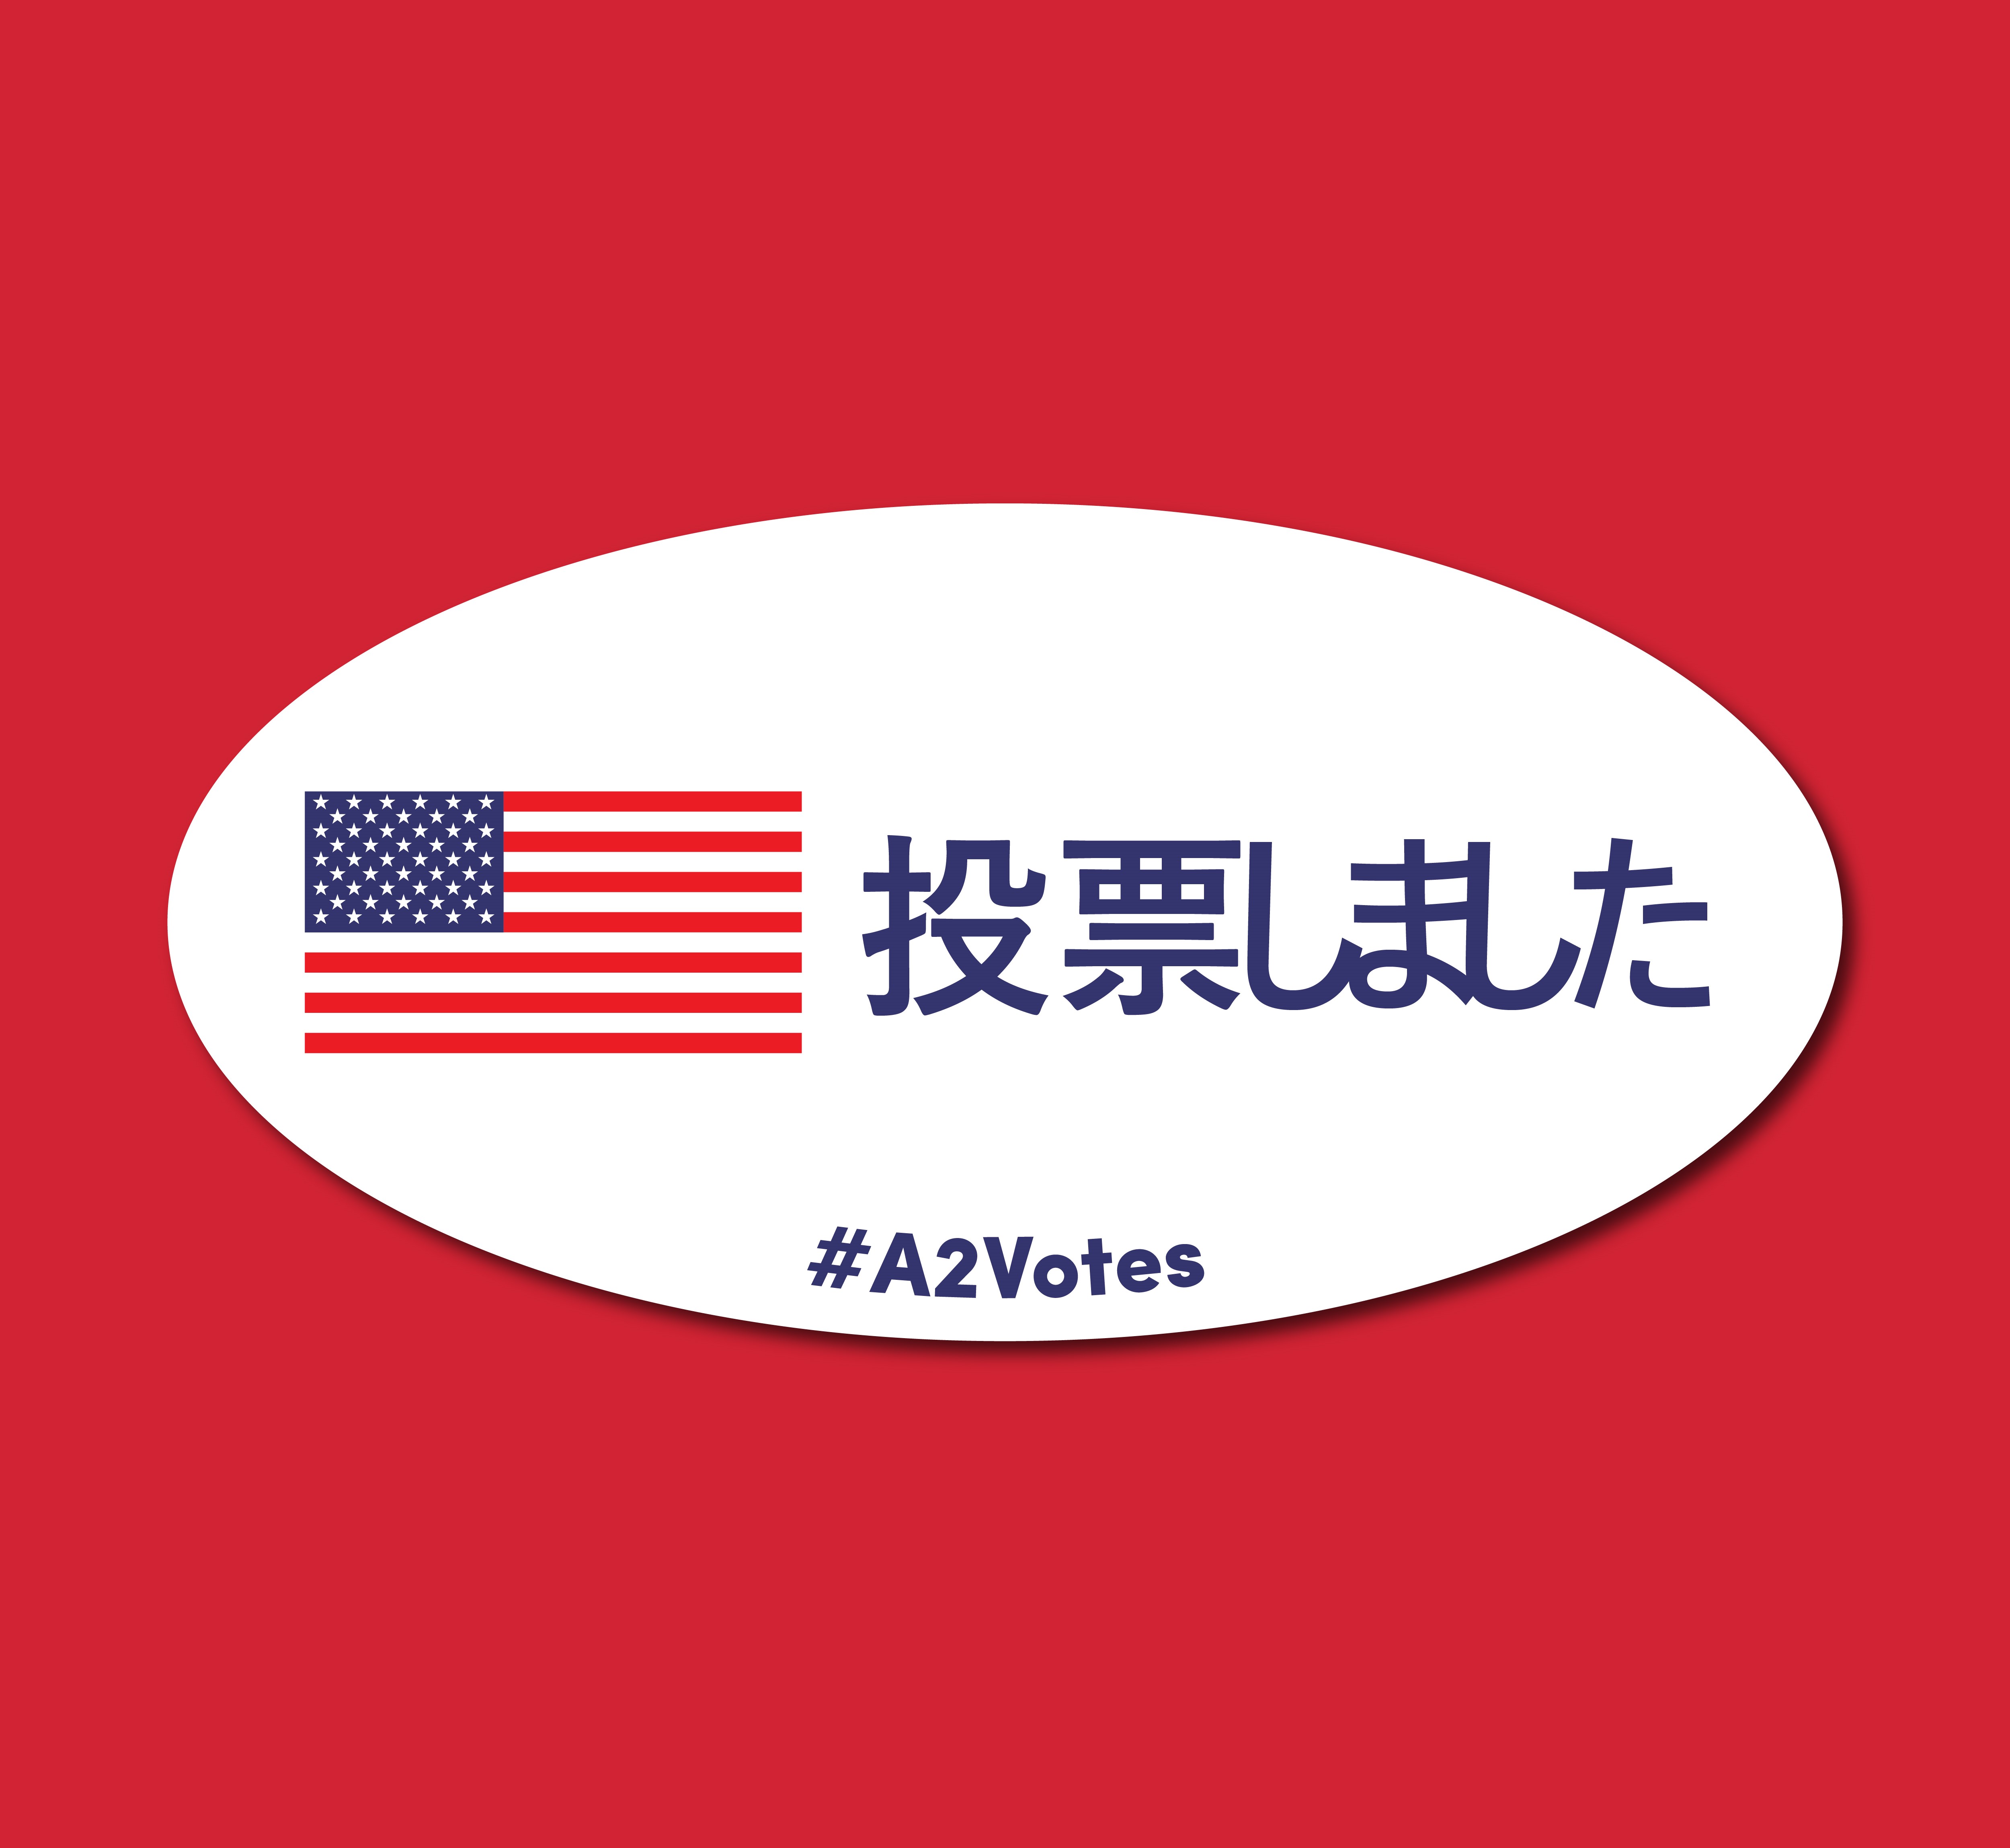 i_voted_japanese.jpg